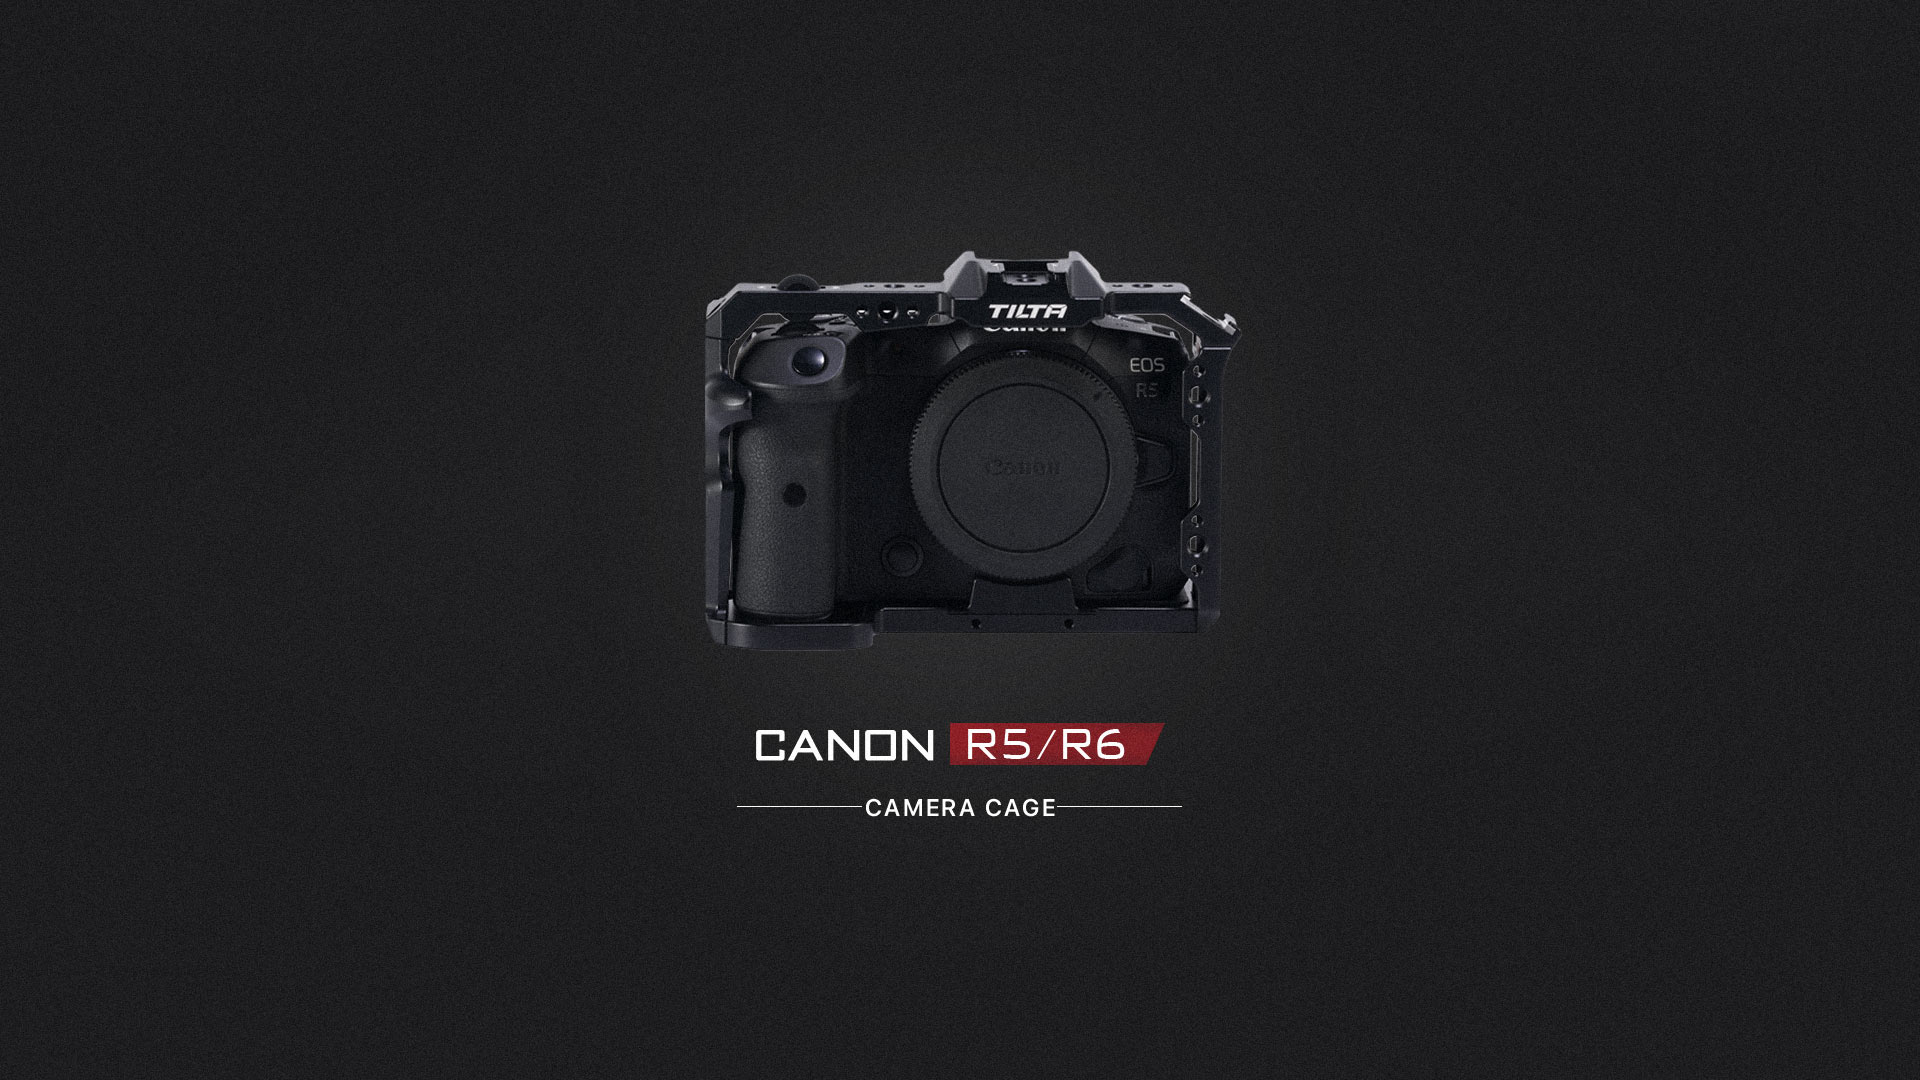 canon r5/r6 cage intro